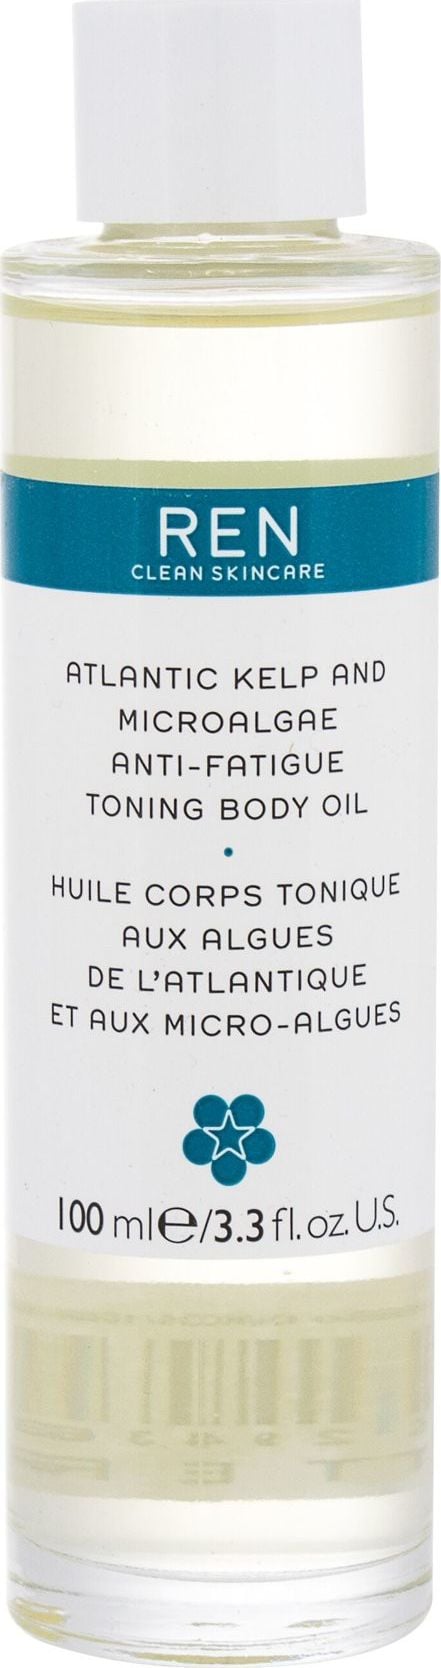 Ren REN Clean Skincare Atlantic Kelp and Microalgae Toning Body oil 100ml